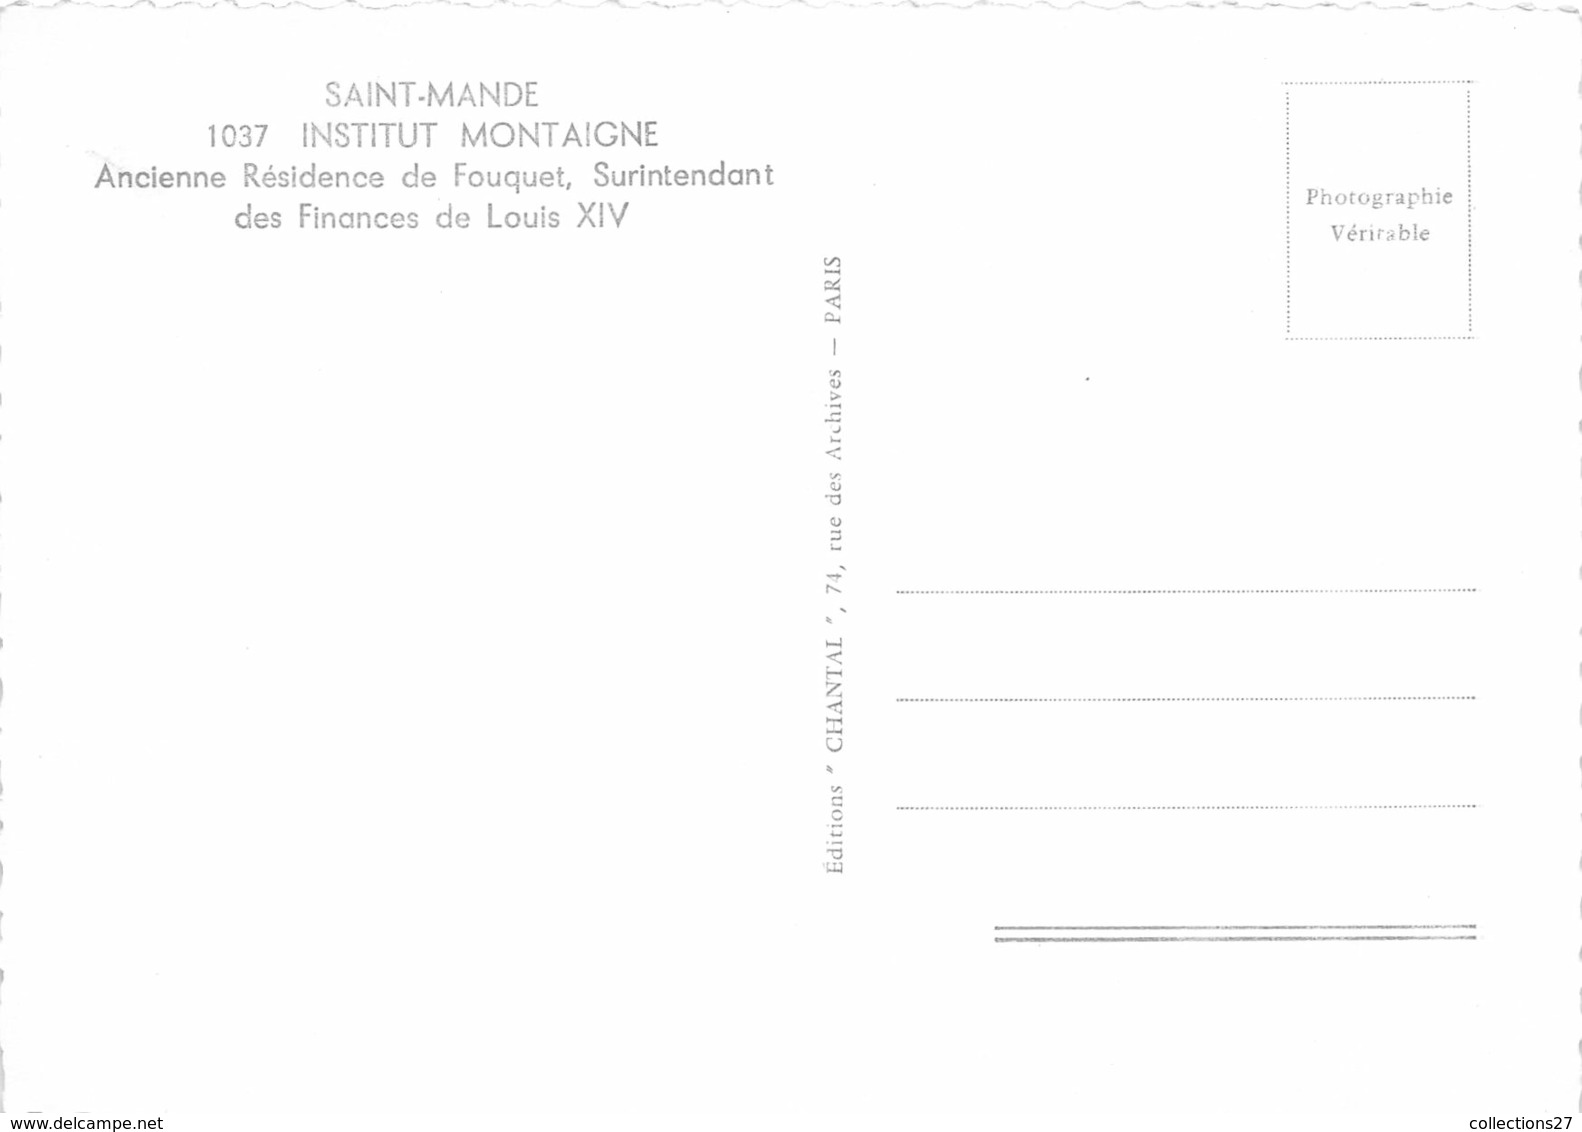 94-SAINT-MANDE- INSTITUT MONTAIGNE, ANCIENNE RESIDENCE DE FOUQUET - Saint Mande